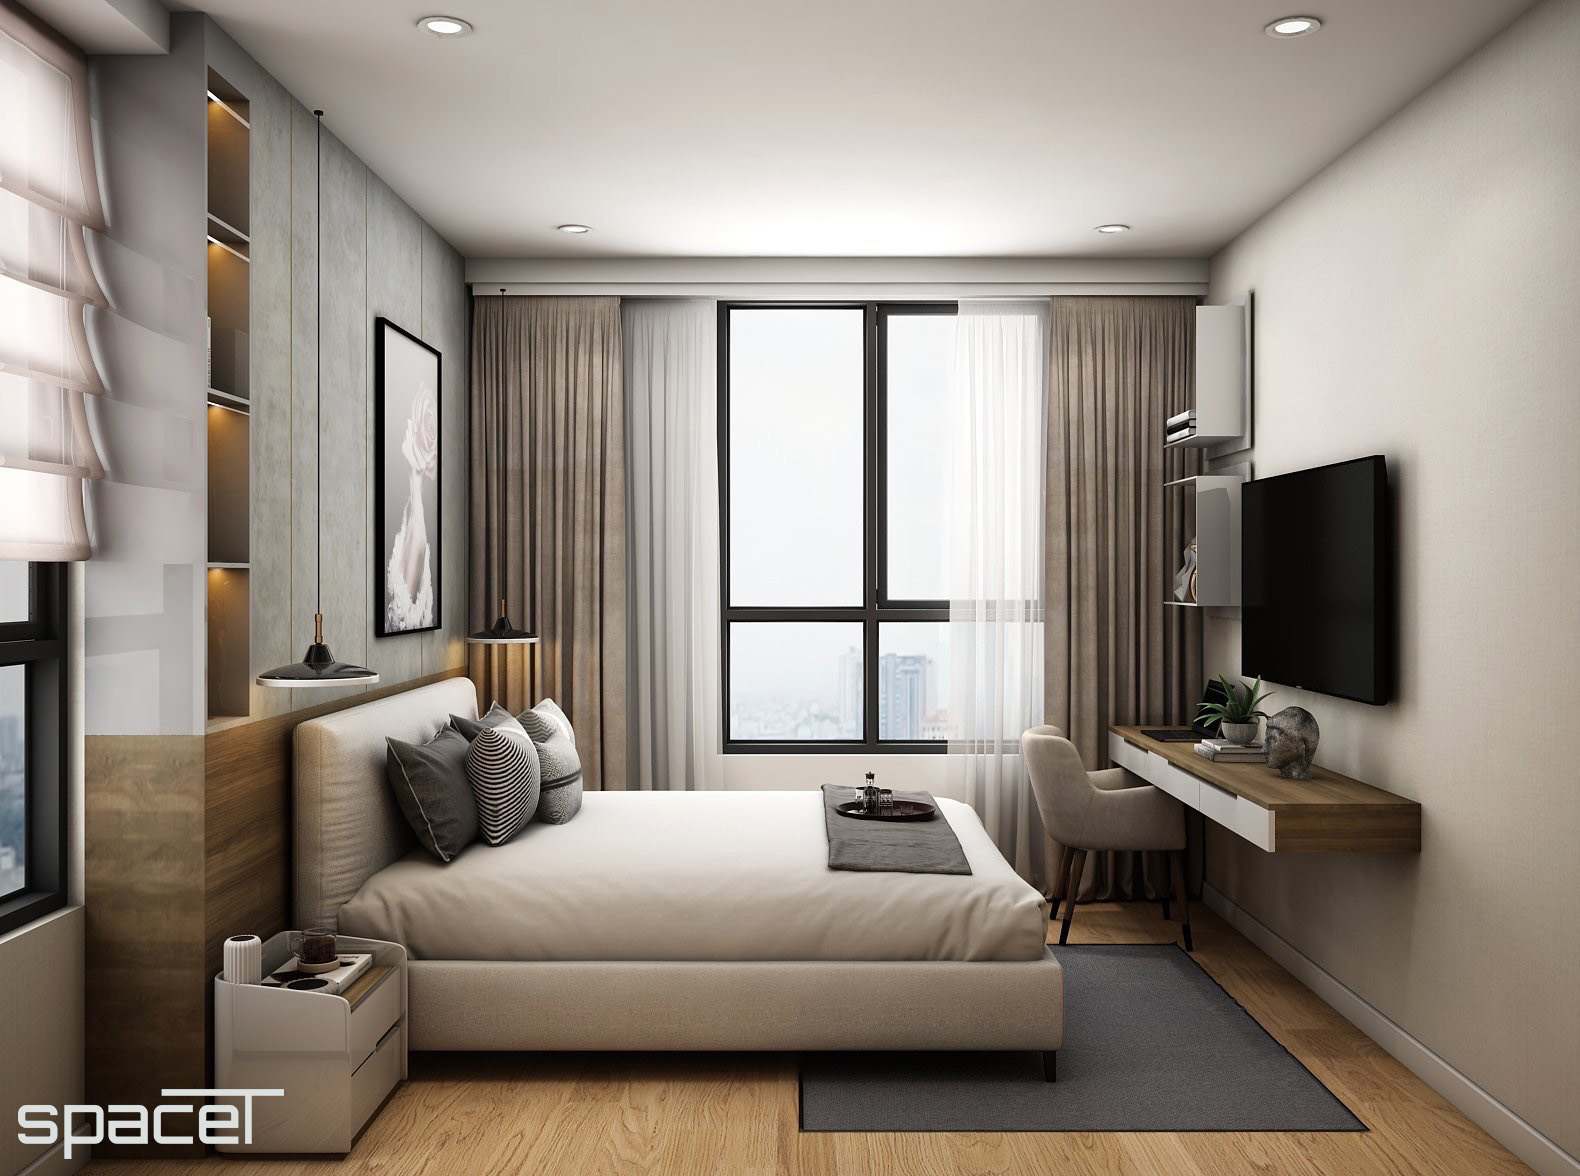 Phòng ngủ, phong cách Hiện đại Modern, thiết kế concept nội thất, căn hộ Homyland 2